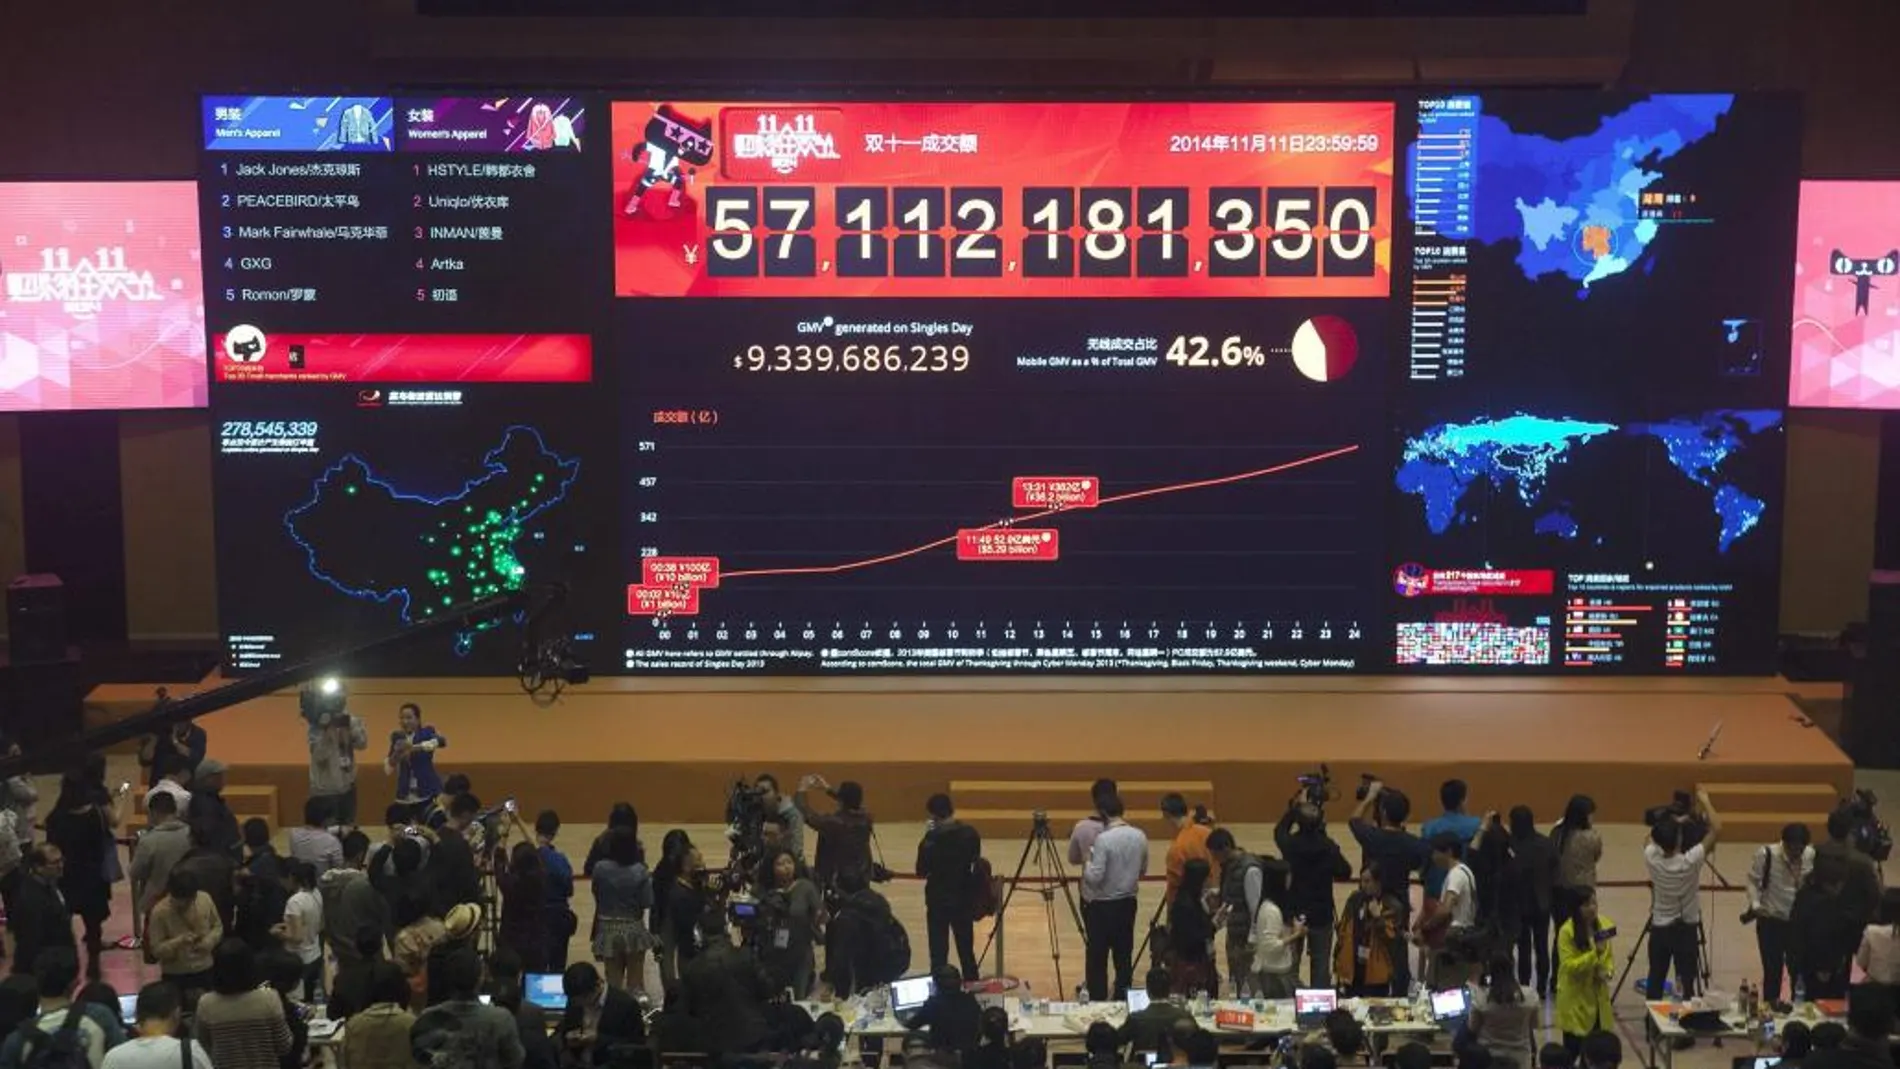 Vista del tablero electrónico que marca las ventas del portal Alibaba